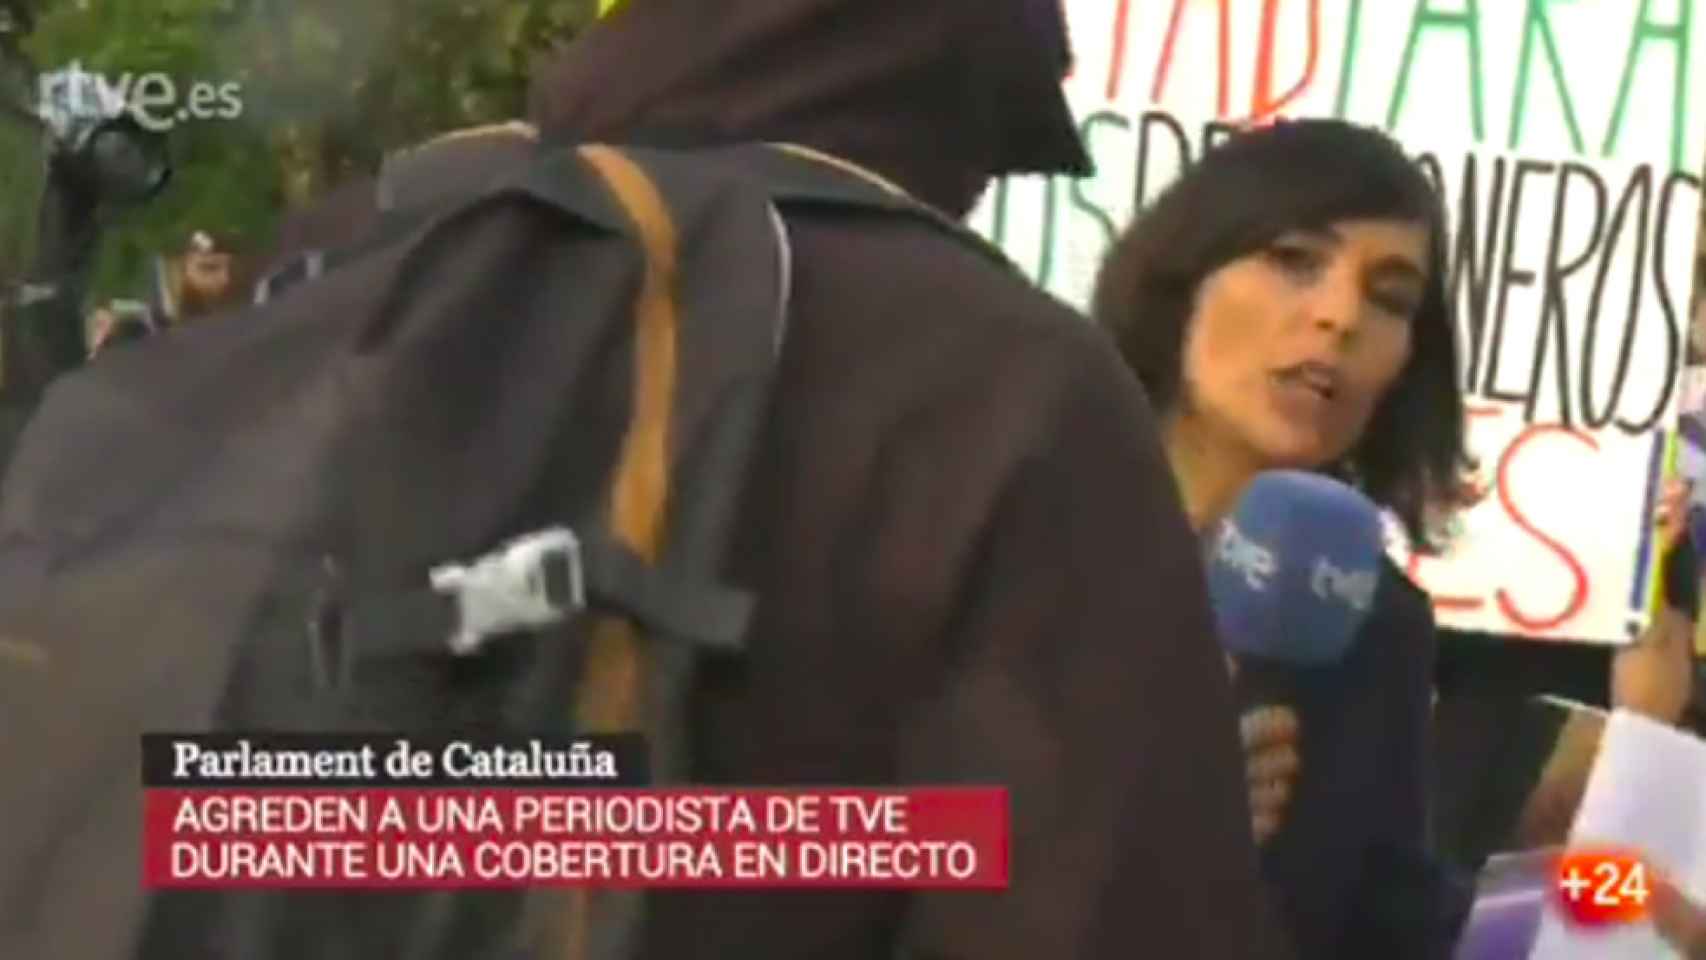 Uno de los momentos de la agresión captados por las cámaras de Televisión Española